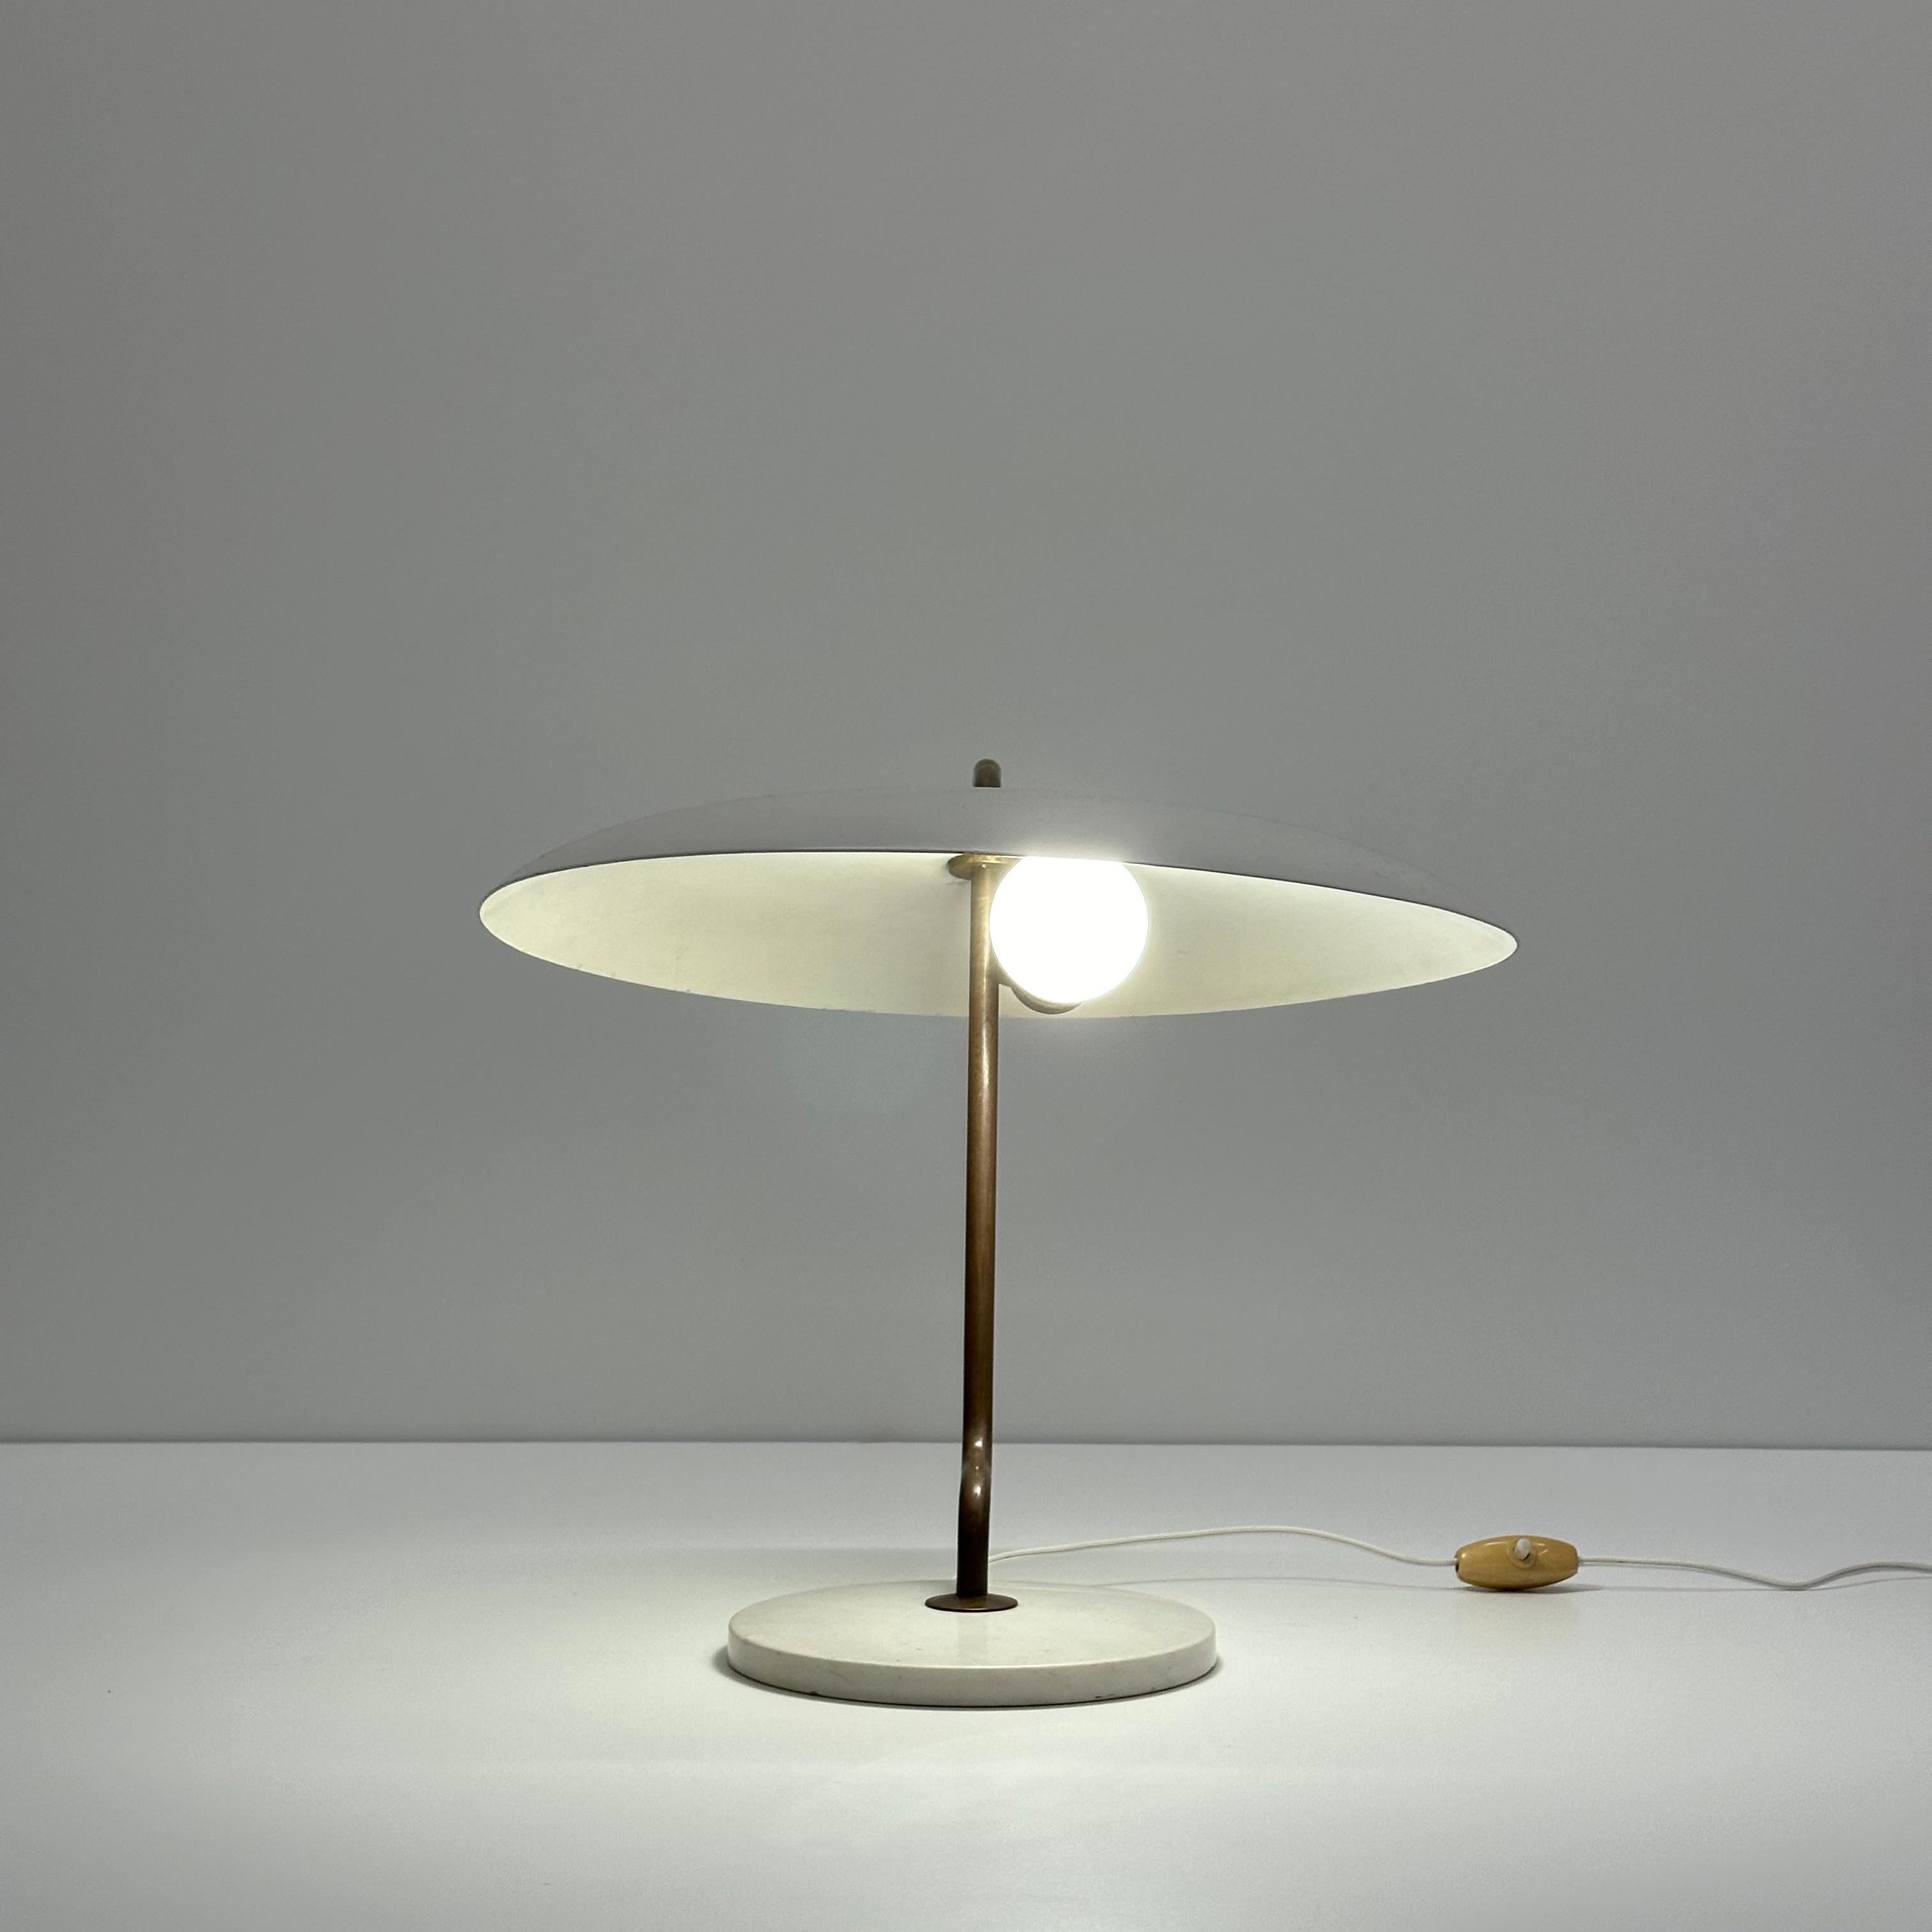 Lampe de table rouge précoce modèle 537 de Gino Sarfatti pour Arteluce, Italie, 1956

Informations supplémentaires :
MATERIAL : Aluminium émaillé, marbre, laiton
Dimensions : 14 1/2